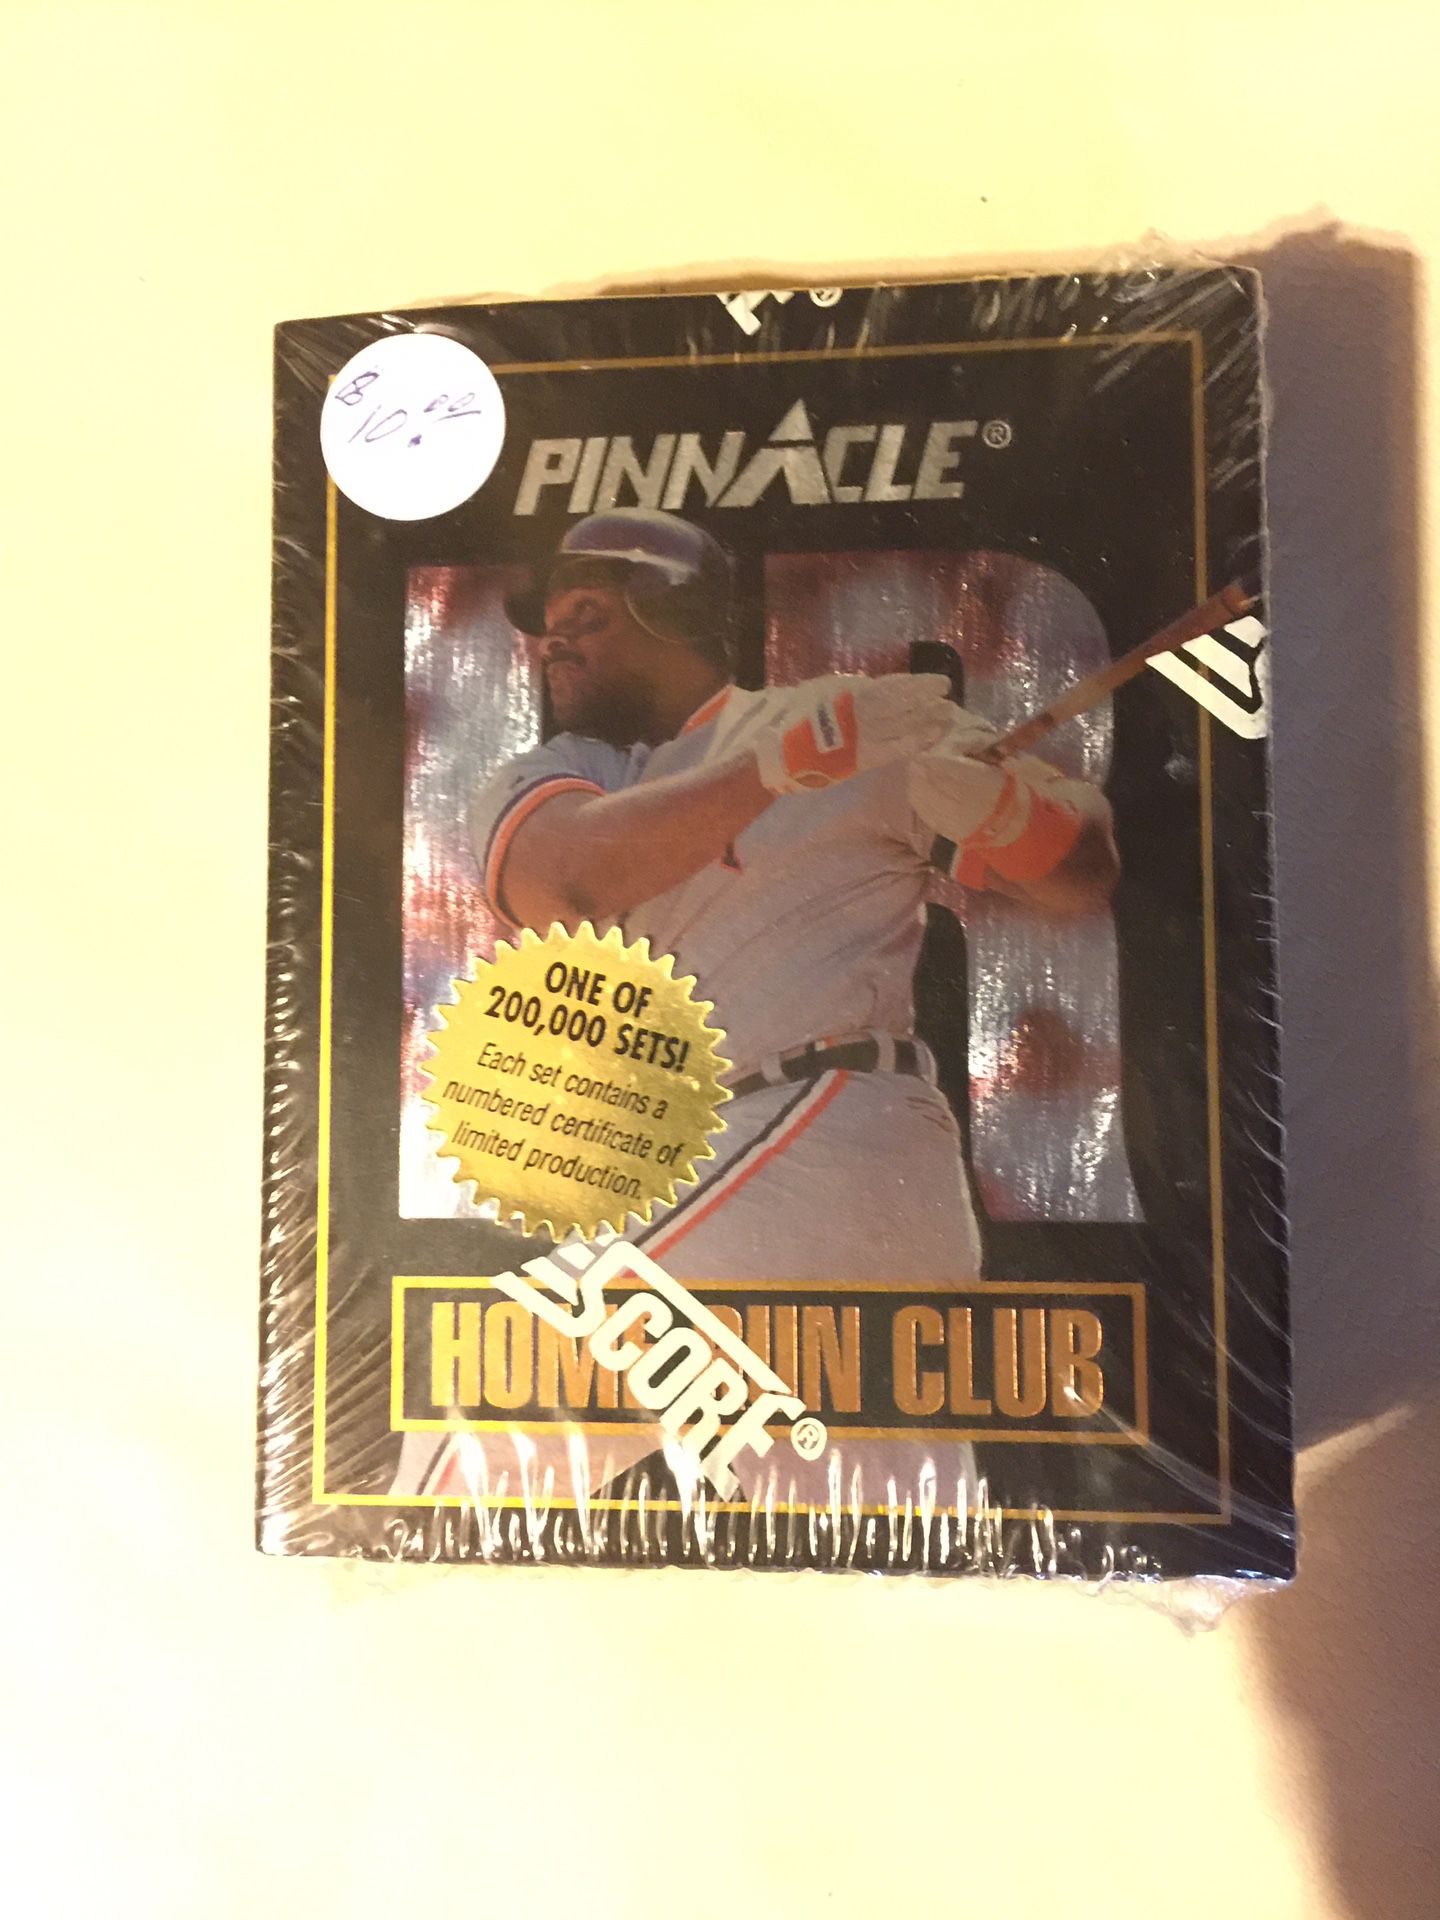 1993-Home Run Club. Pinnacle,